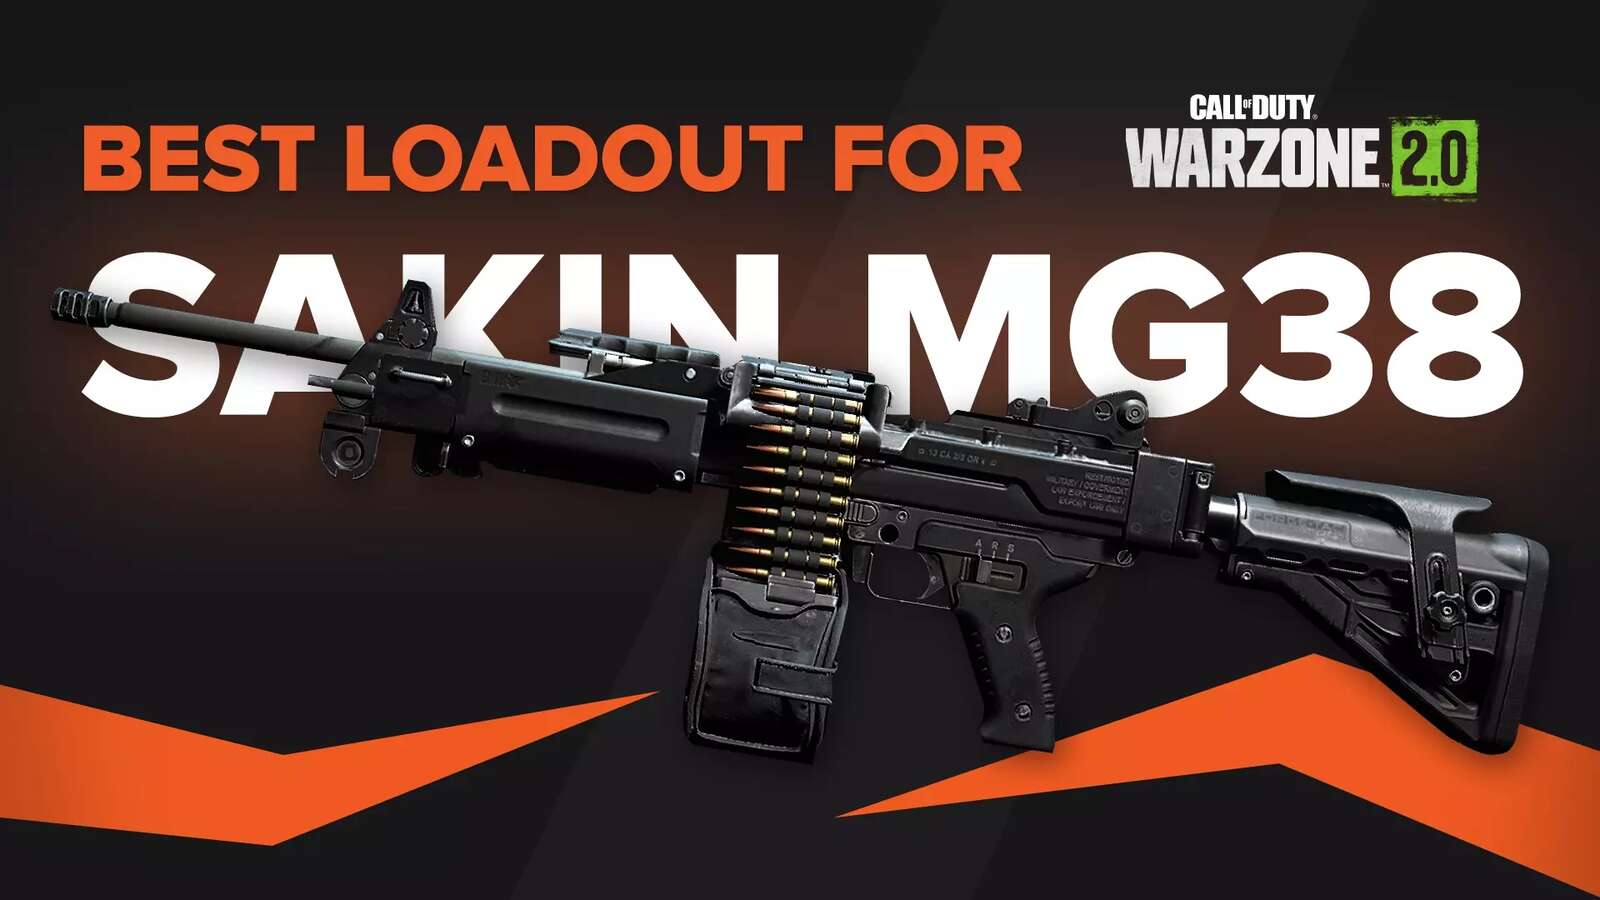 Best Sakin MG38 Loadout | Warzone 2.0